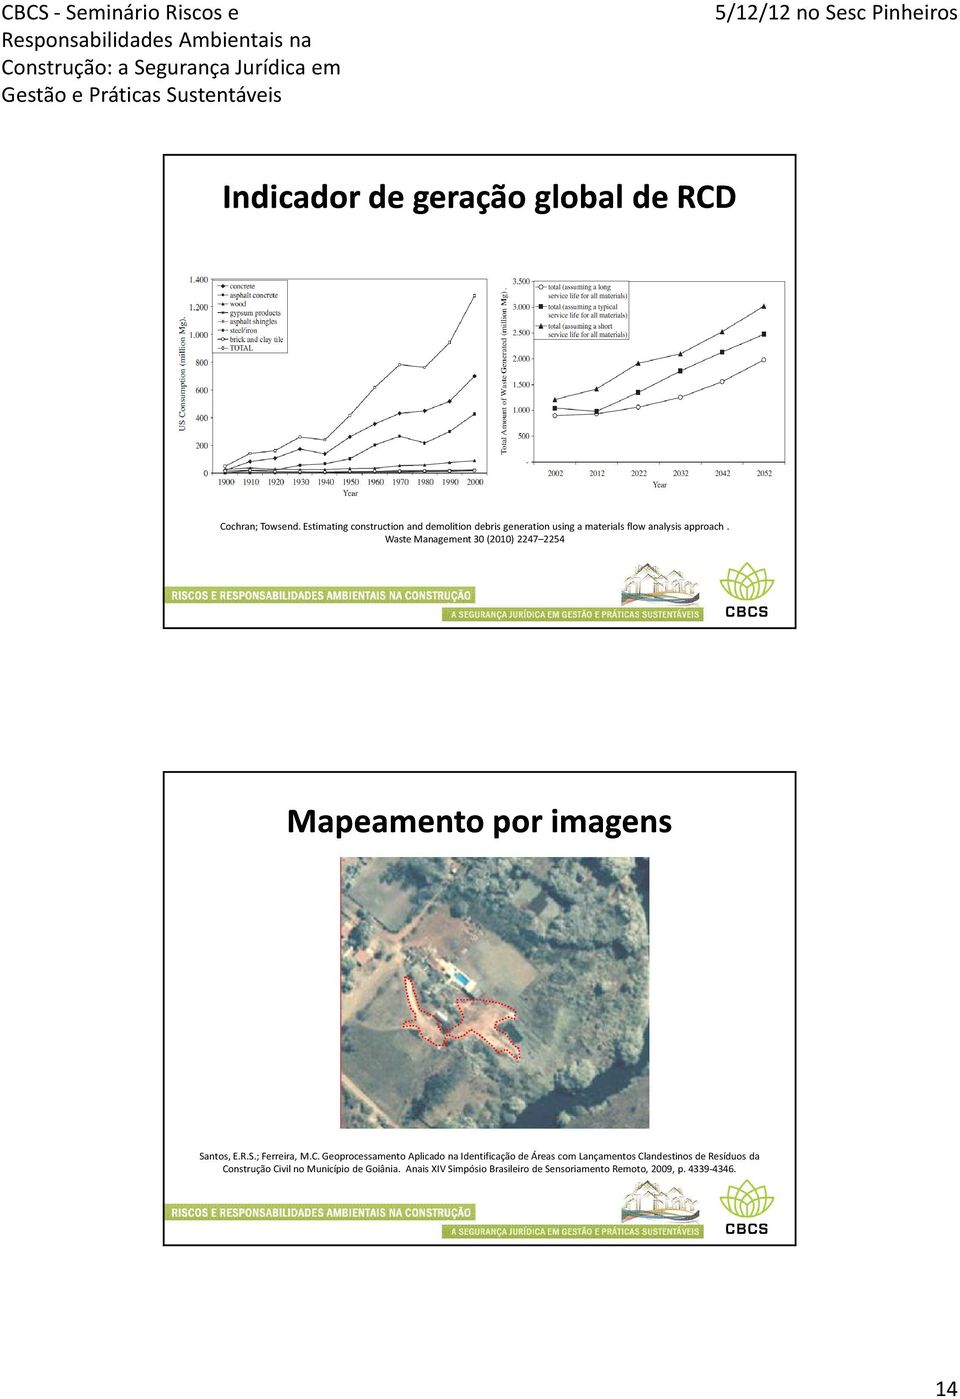 Waste Management 30 (2010) 2247 2254 Mapeamento por imagens Santos, E.R.S.; Ferreira, M.C.